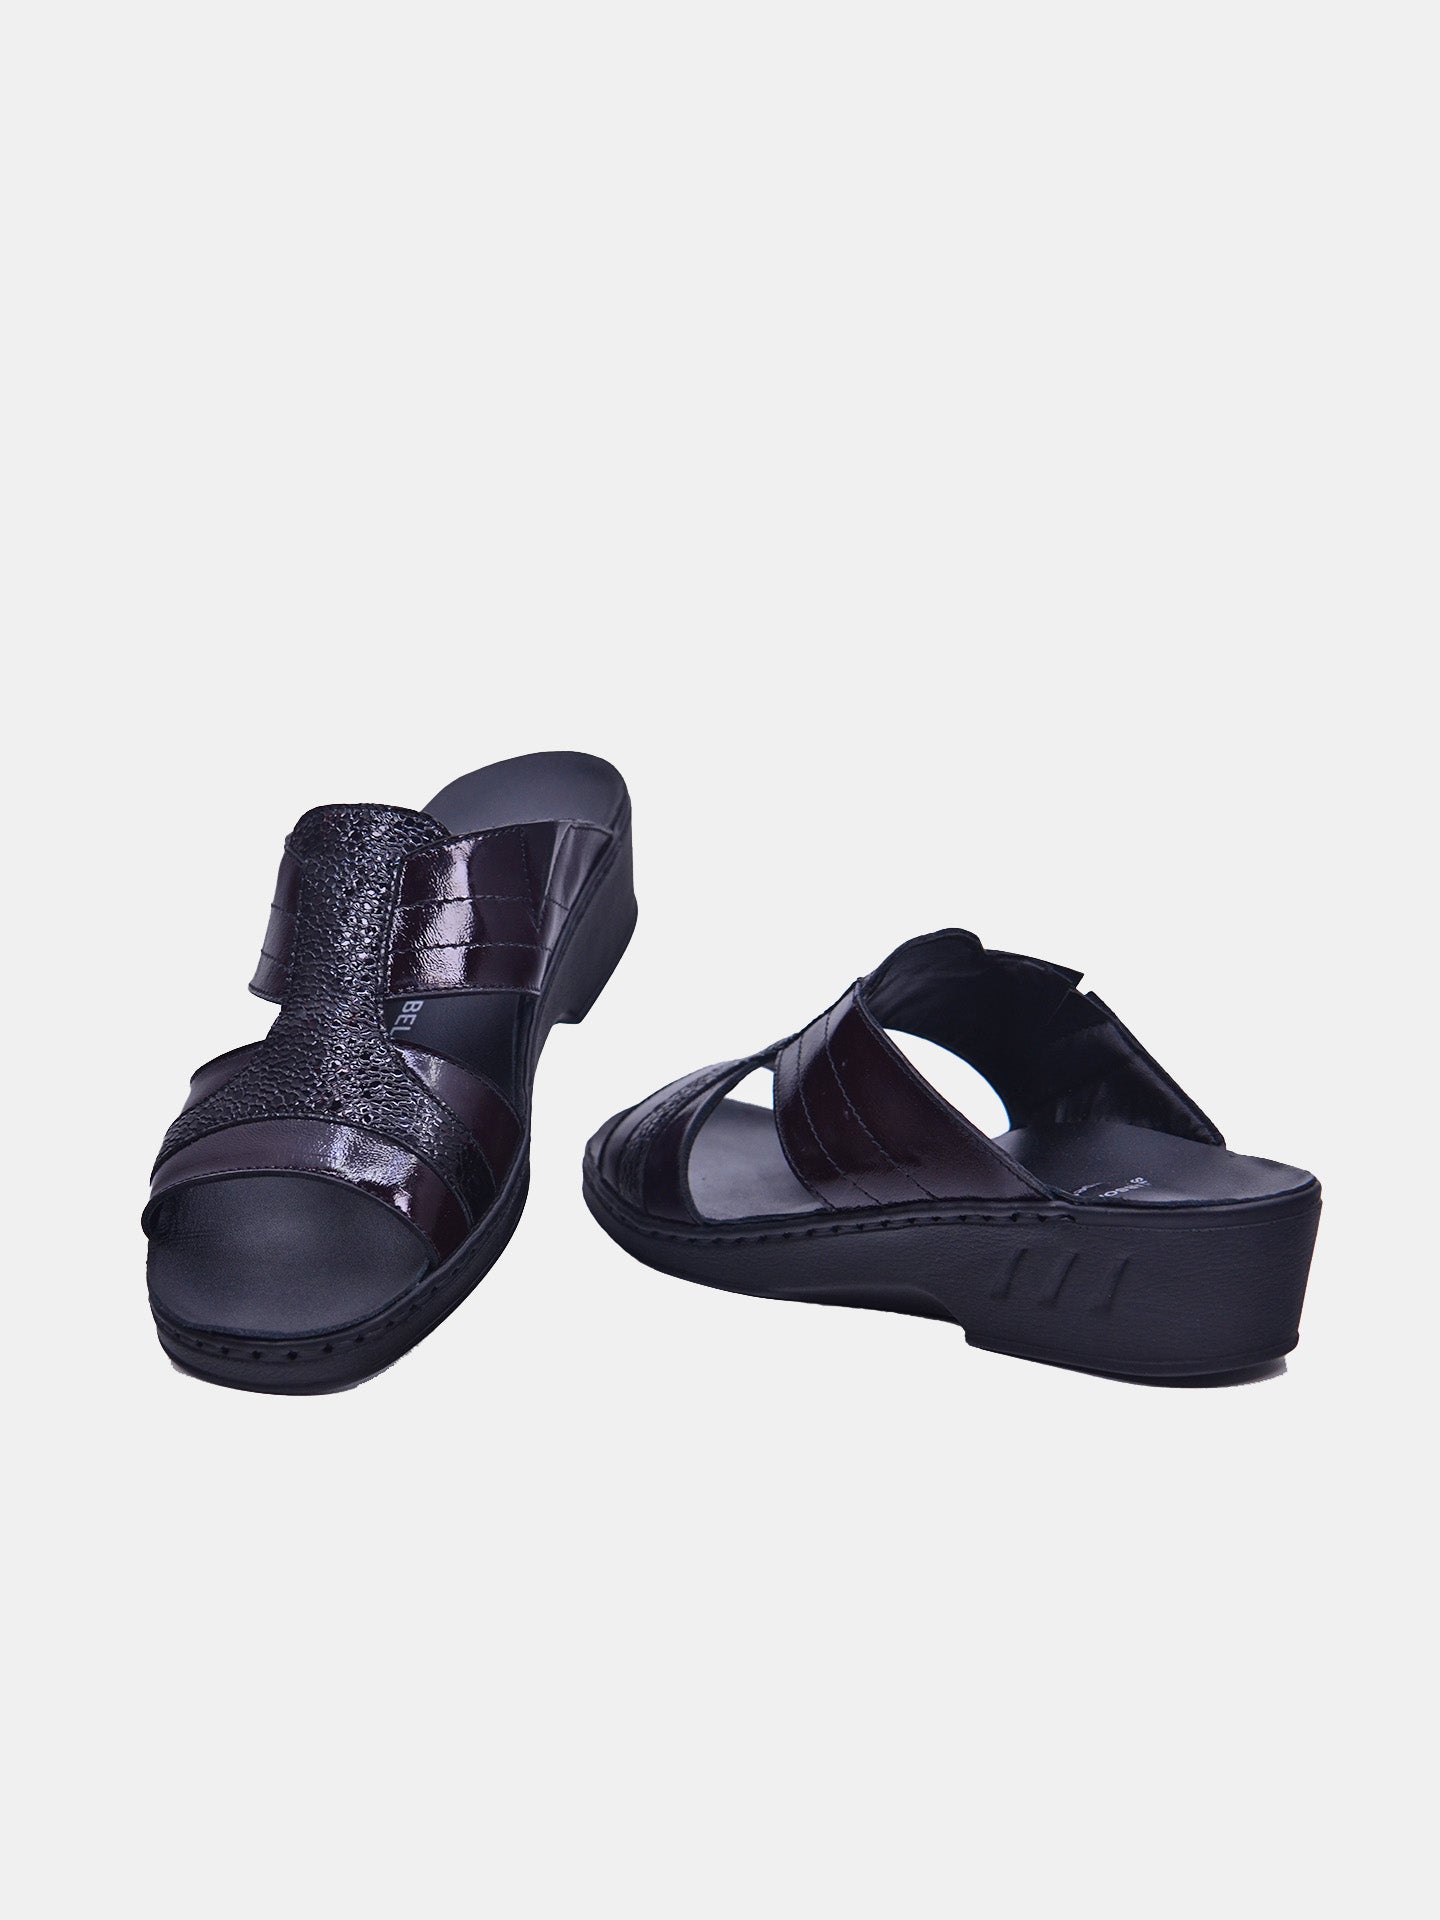 Josef Seibel 08821 Women's Flat Sandals #color_Maroon